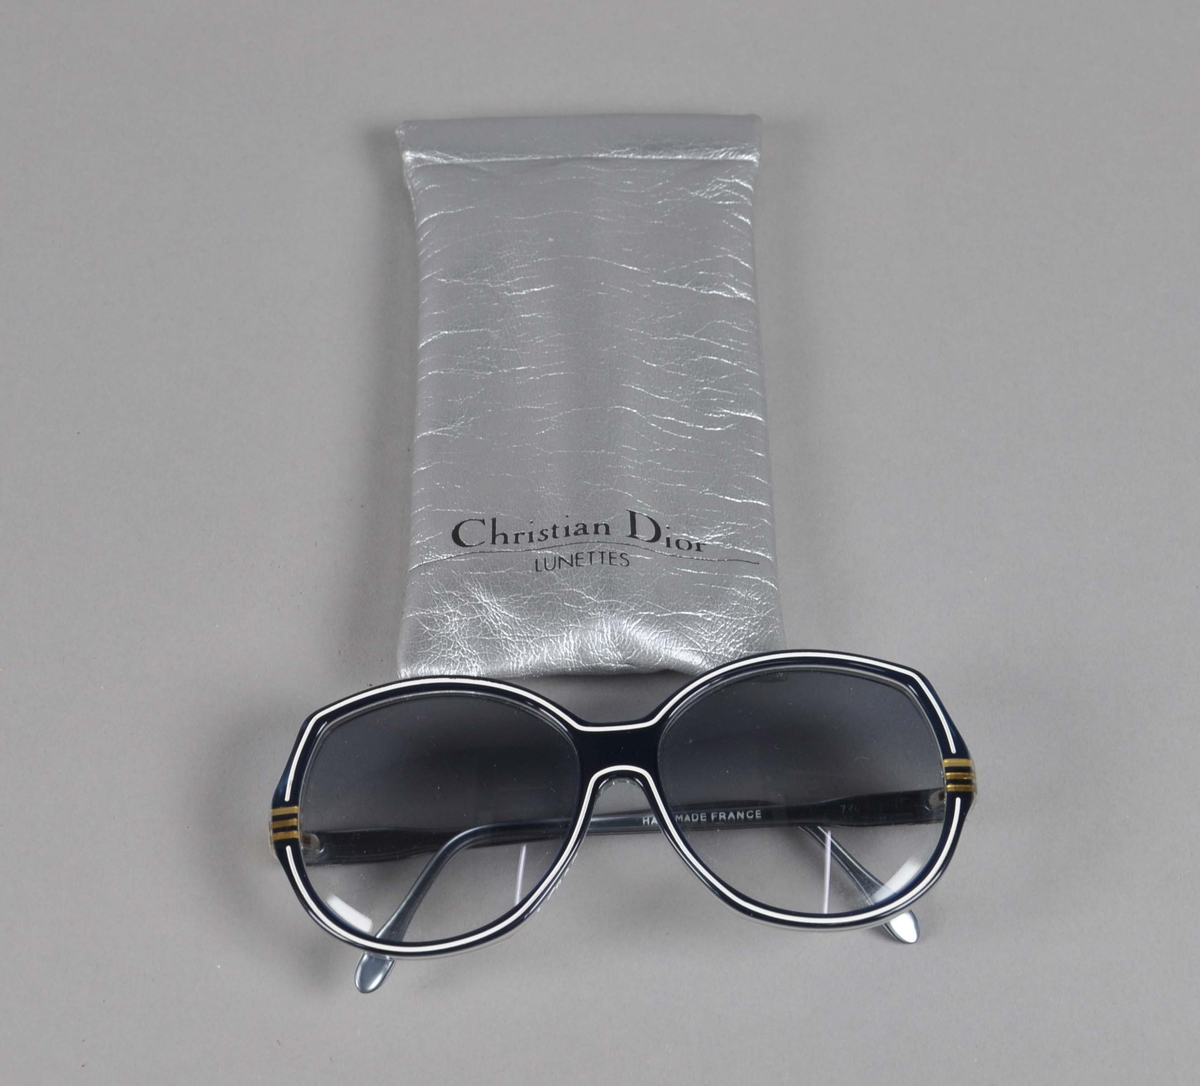 Sølvfarget brilleetui av tekstilt materiale. I etuiet er det et par solbriller.